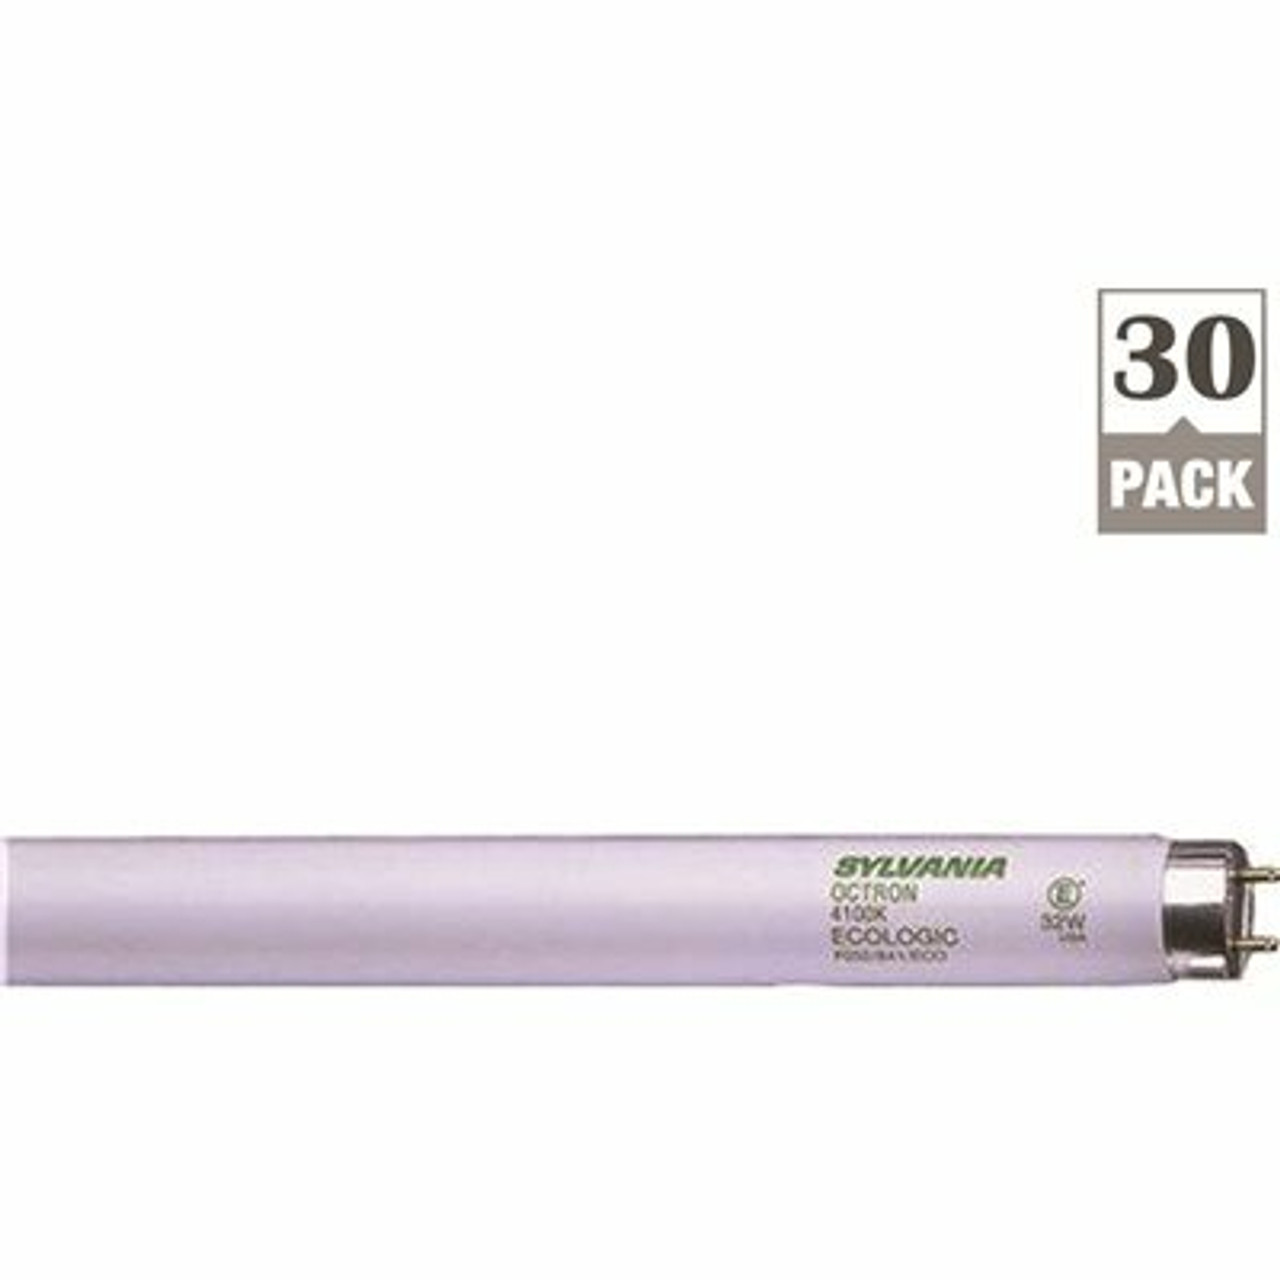 Sylvania 32-Watt Energy Saving Linear T8 Fluorescent Light Bulb Bright White (30-Pack)